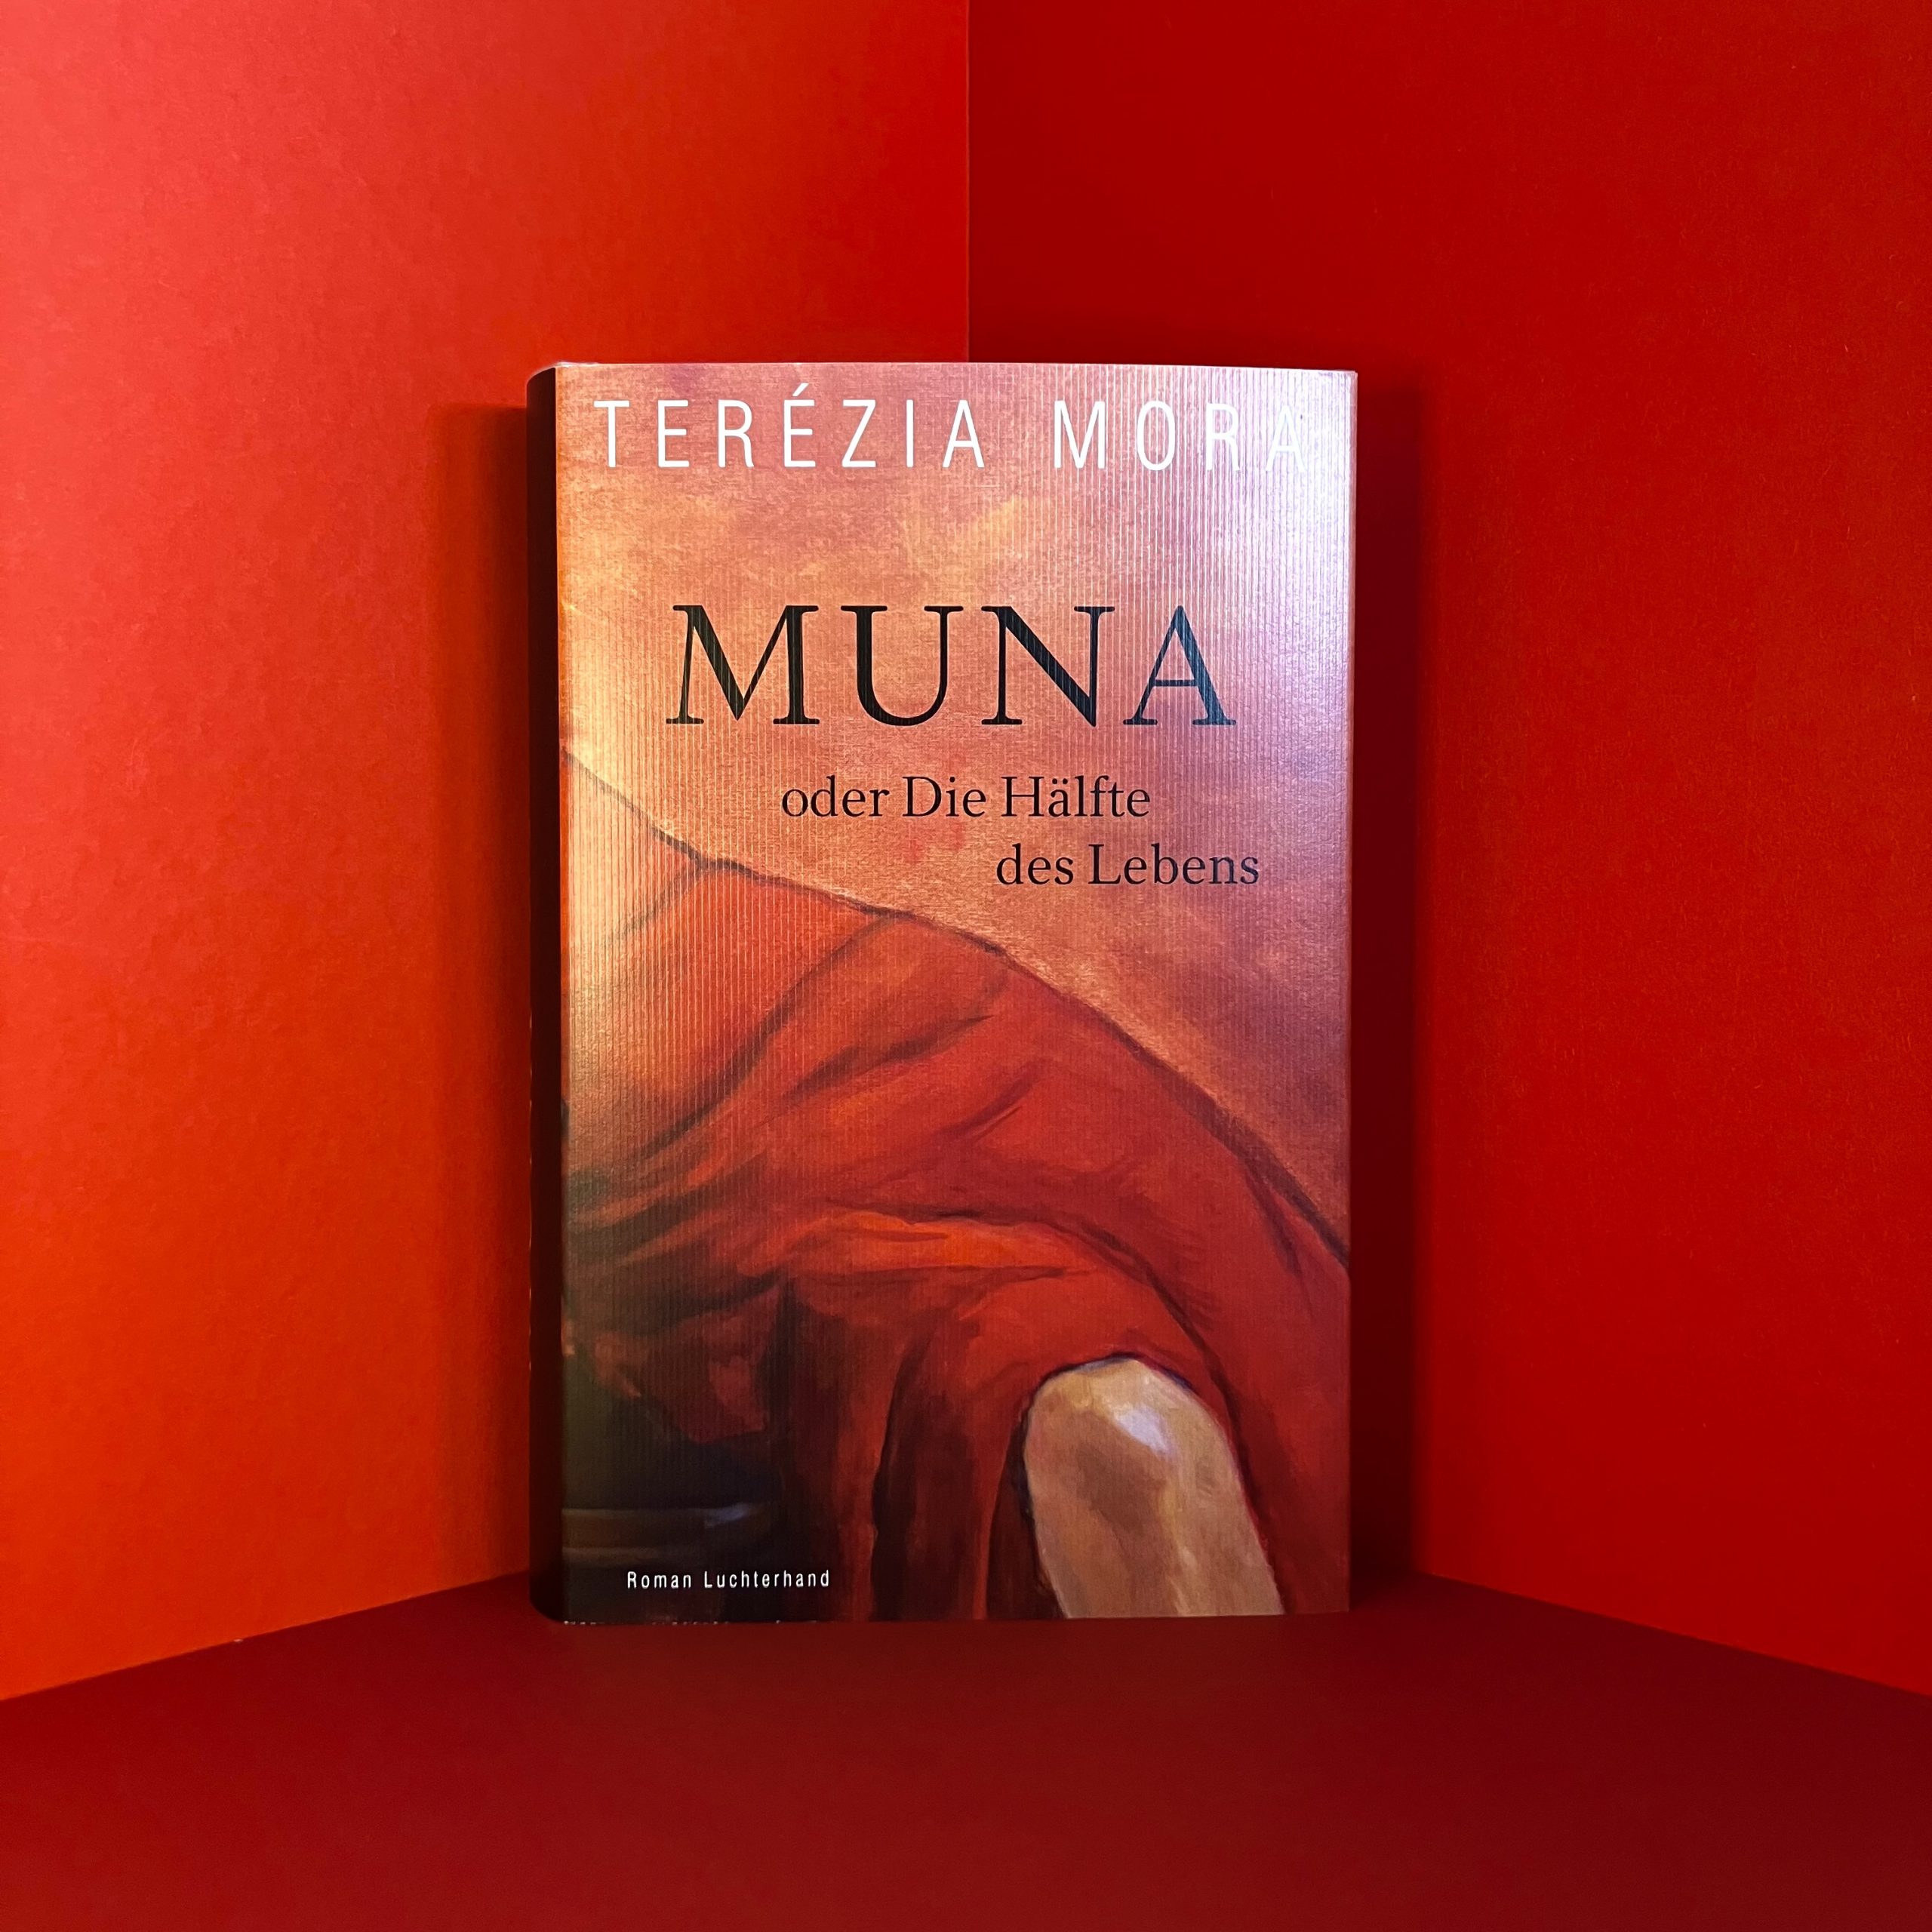 MUNA oder die Hälfte des Lebens von Terézia Mora